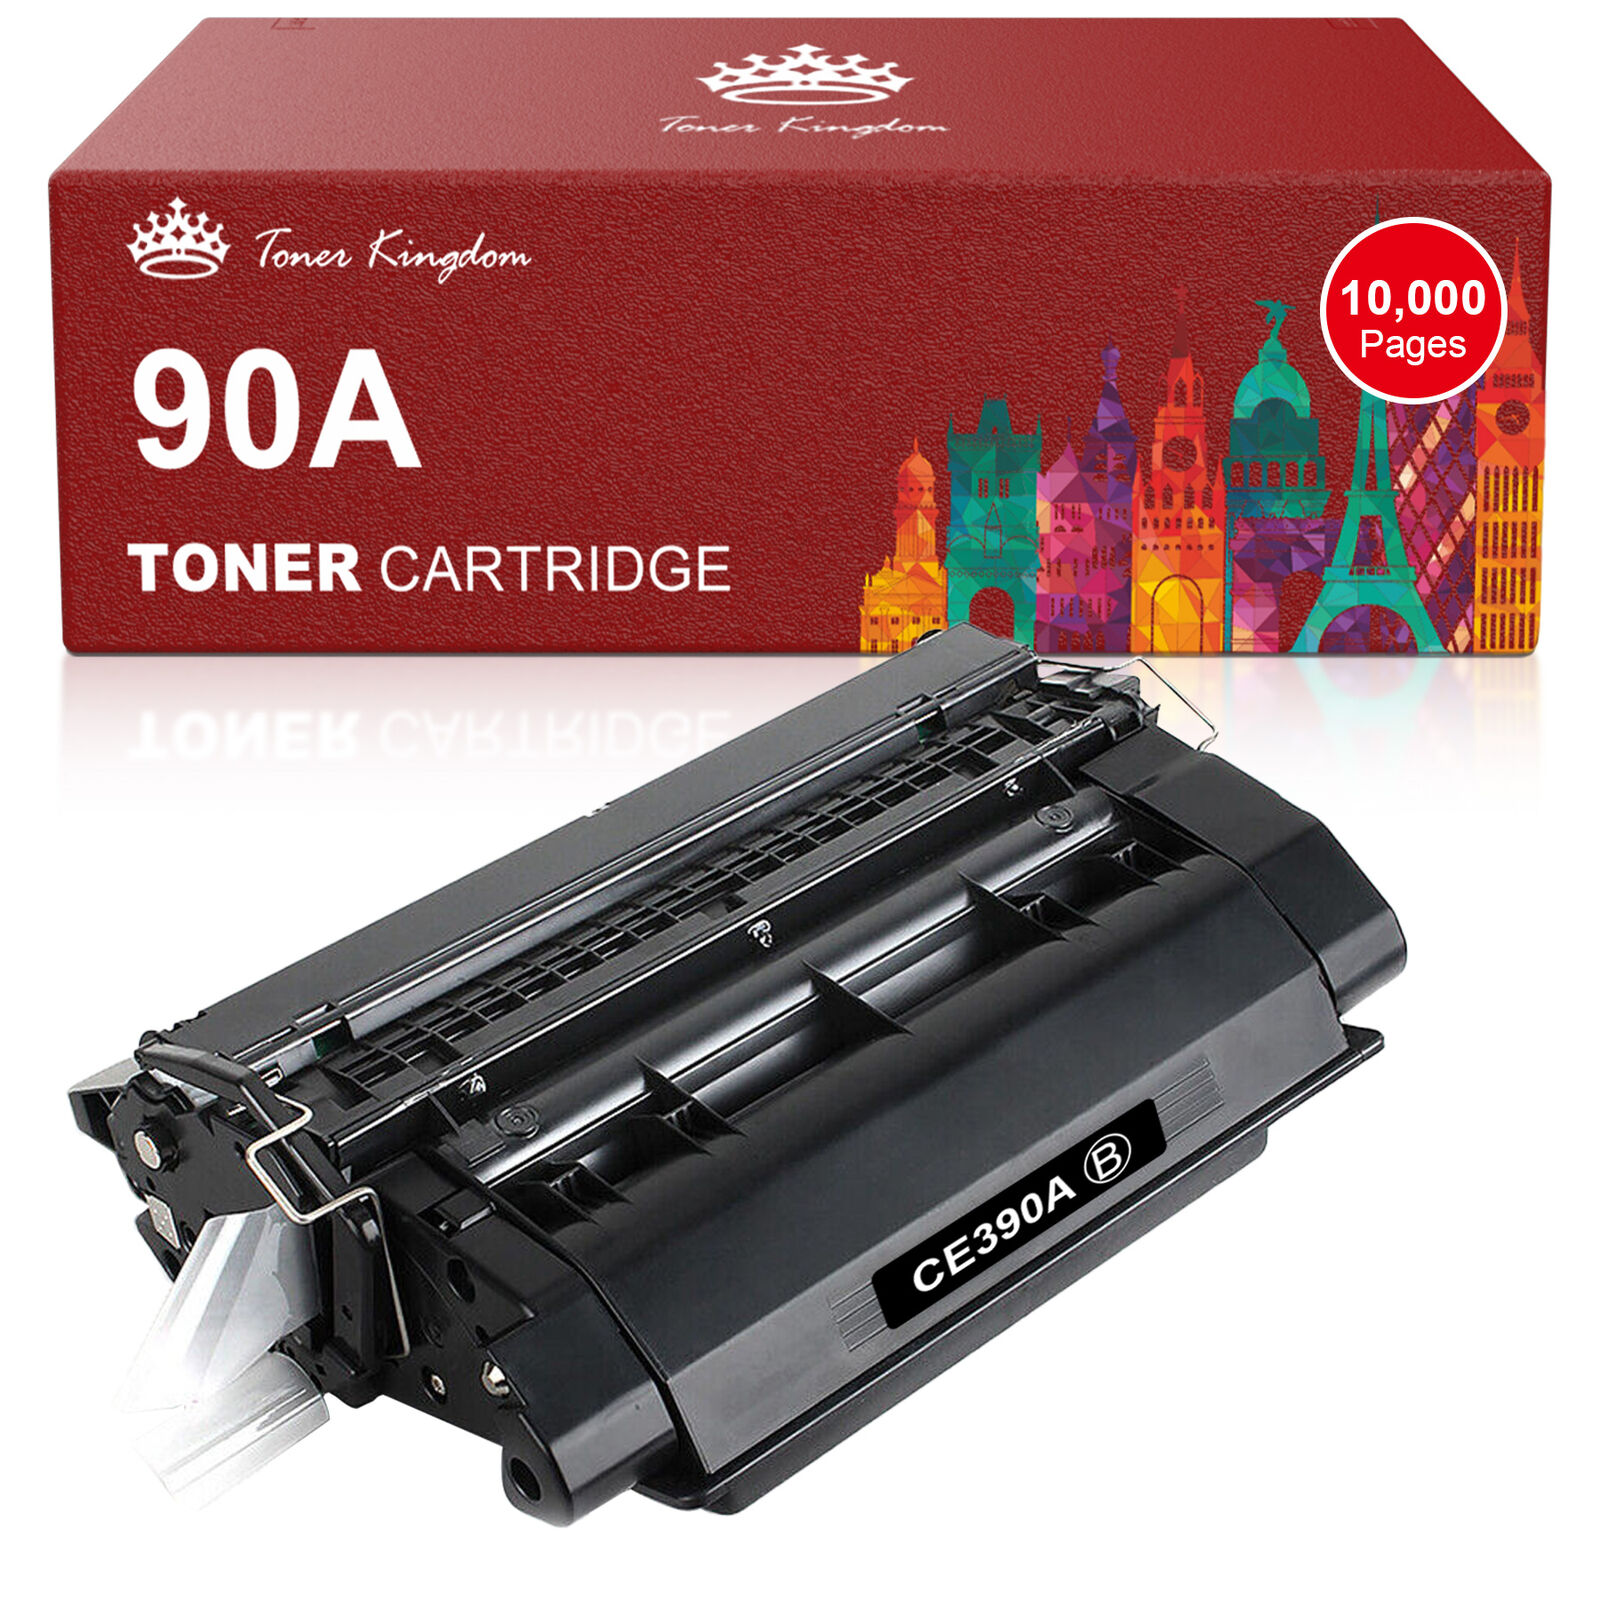 1Pc Toner Cartridge compatible for HP CE390A Enterprise M4555 MFP series P4014